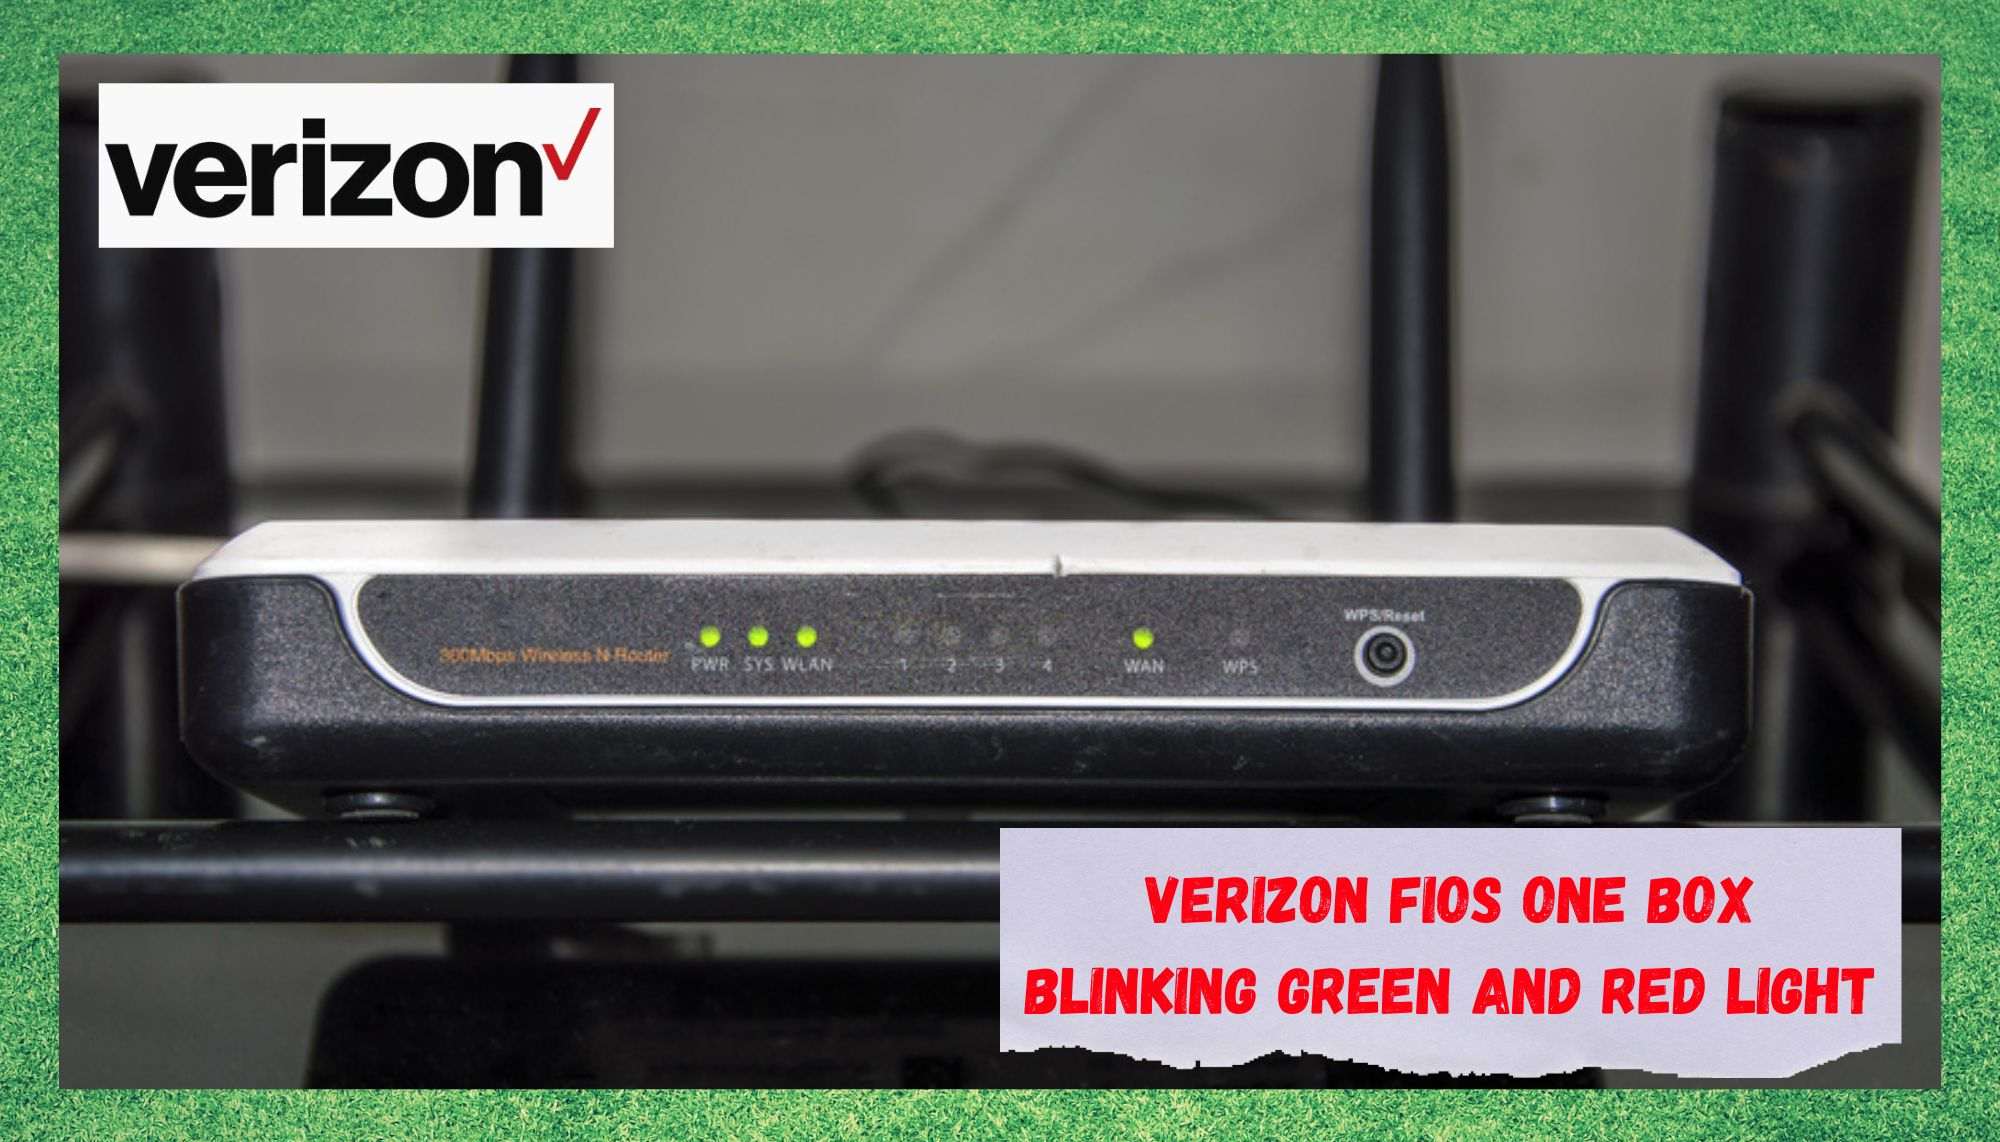 2 λόγοι για τους οποίους το Verizon FiOS One Box αναβοσβήνει με πράσινο και κόκκινο φως